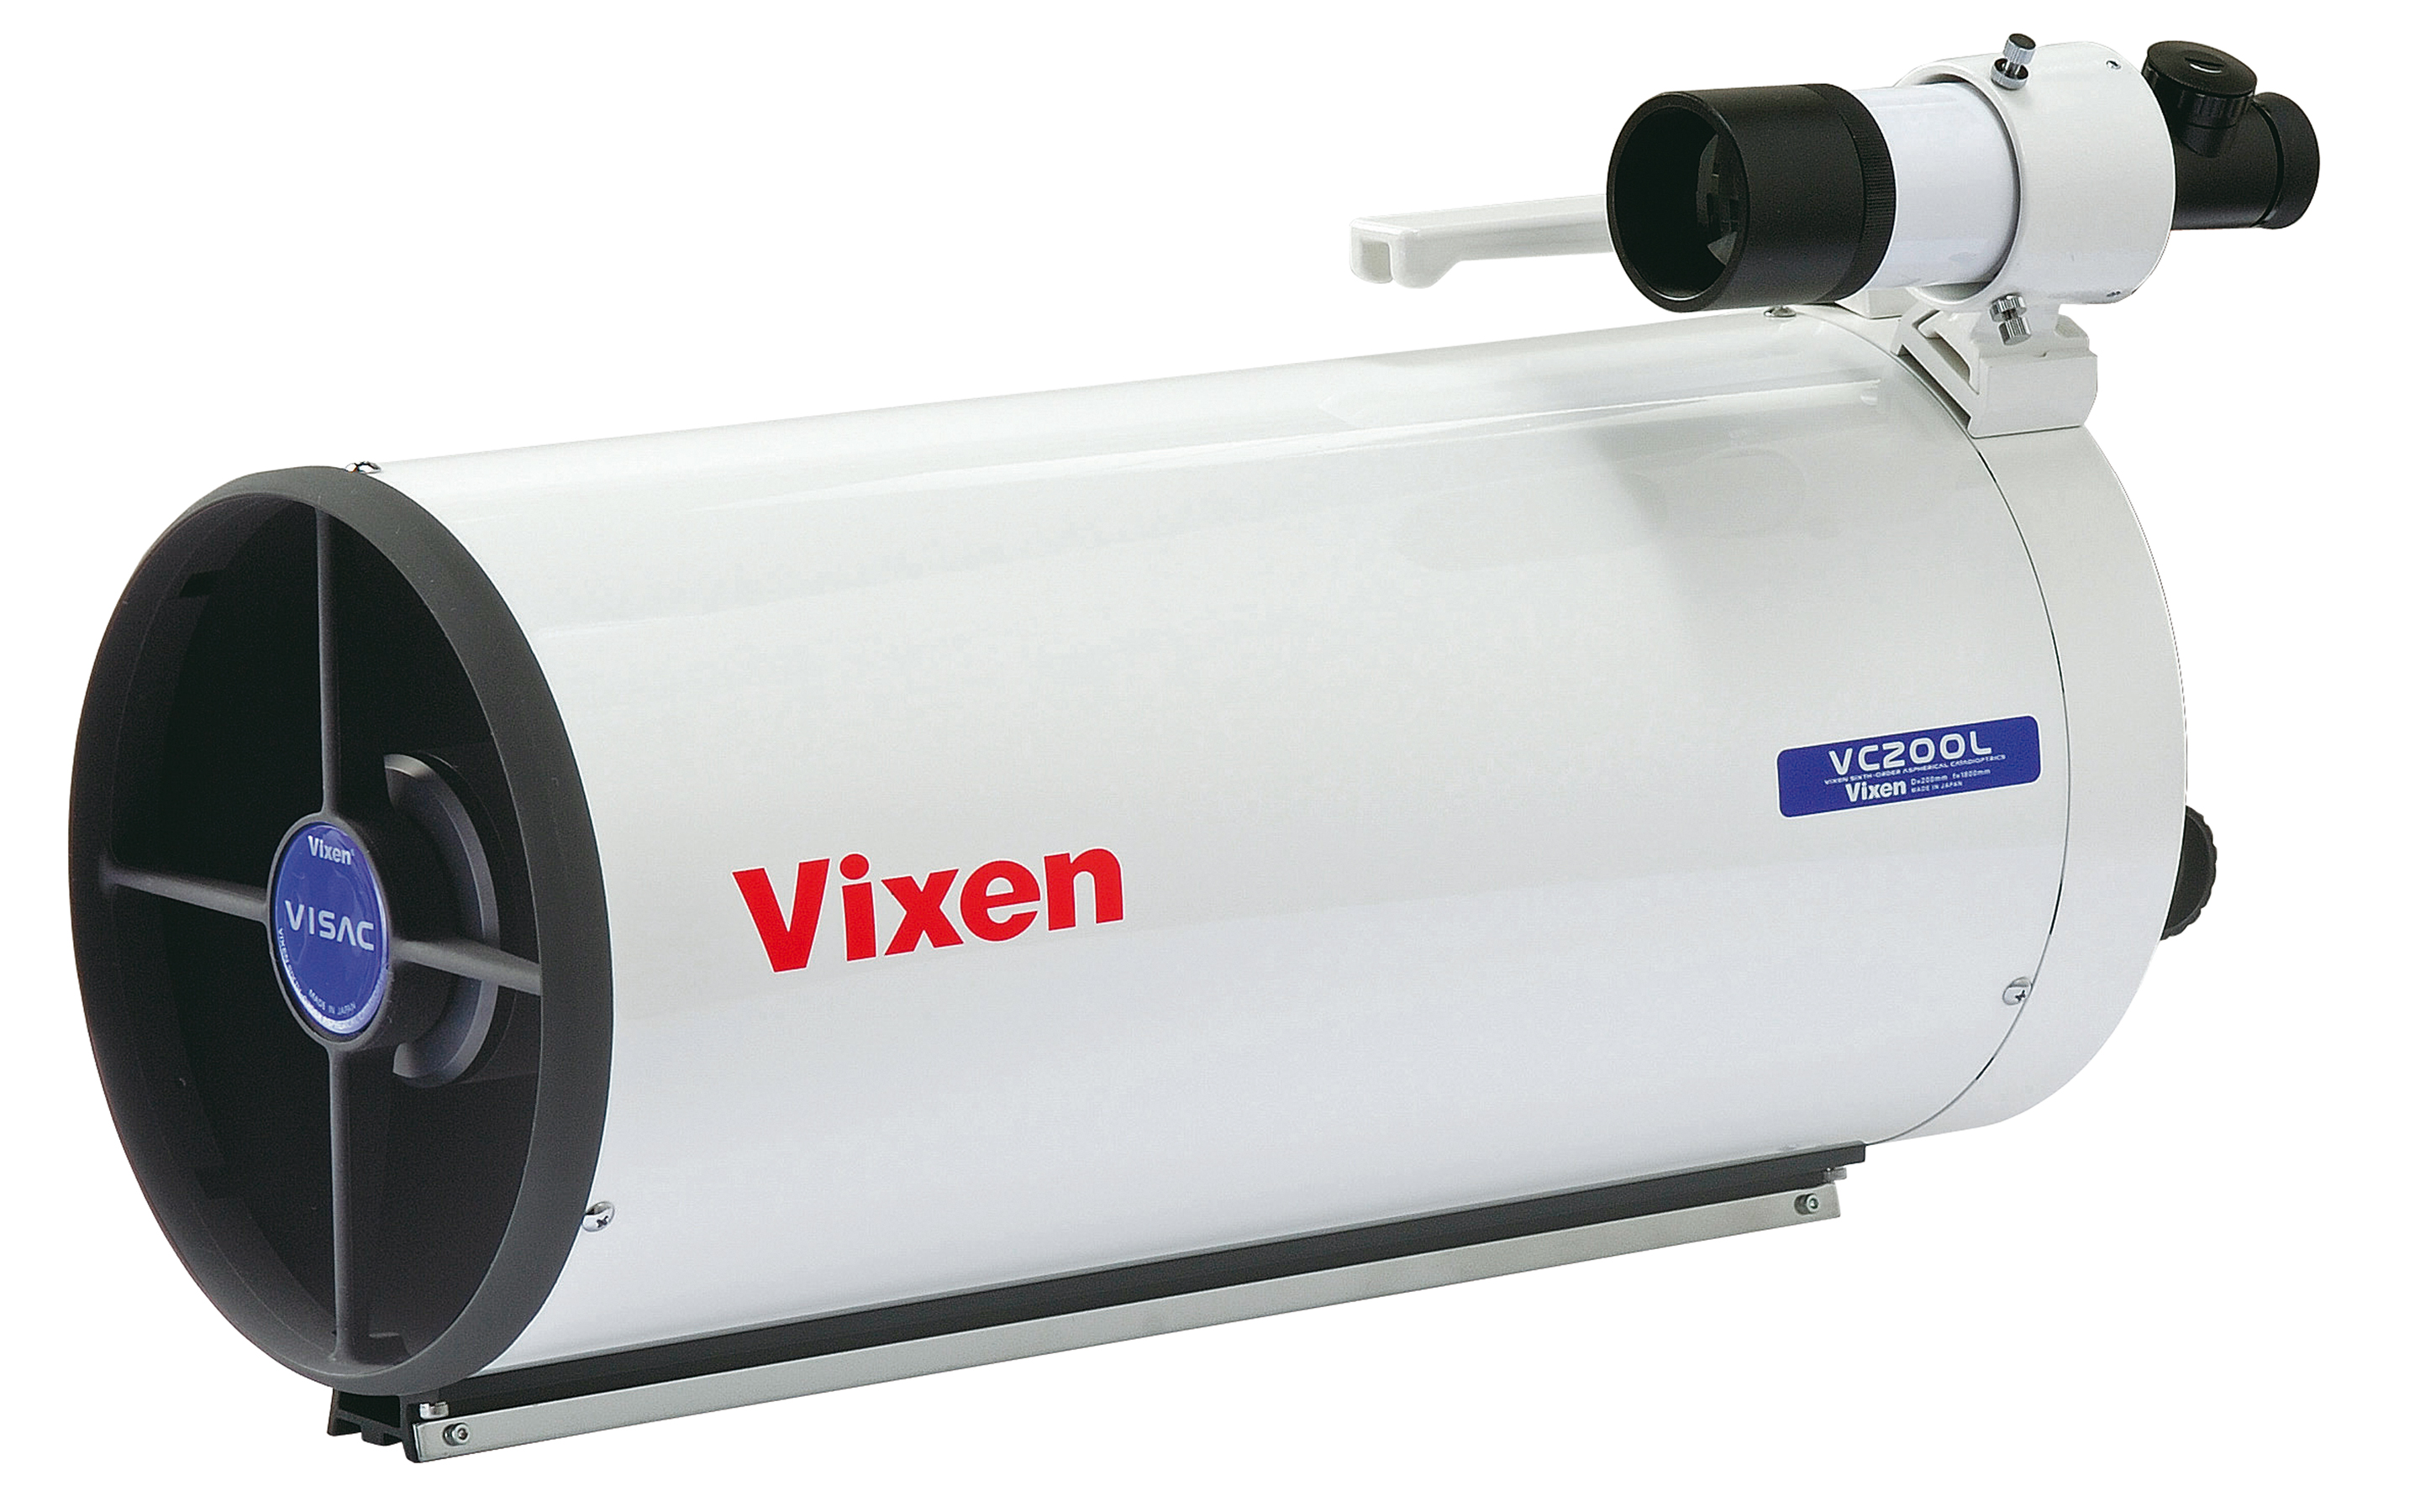 Vixen VC200L Optical tube